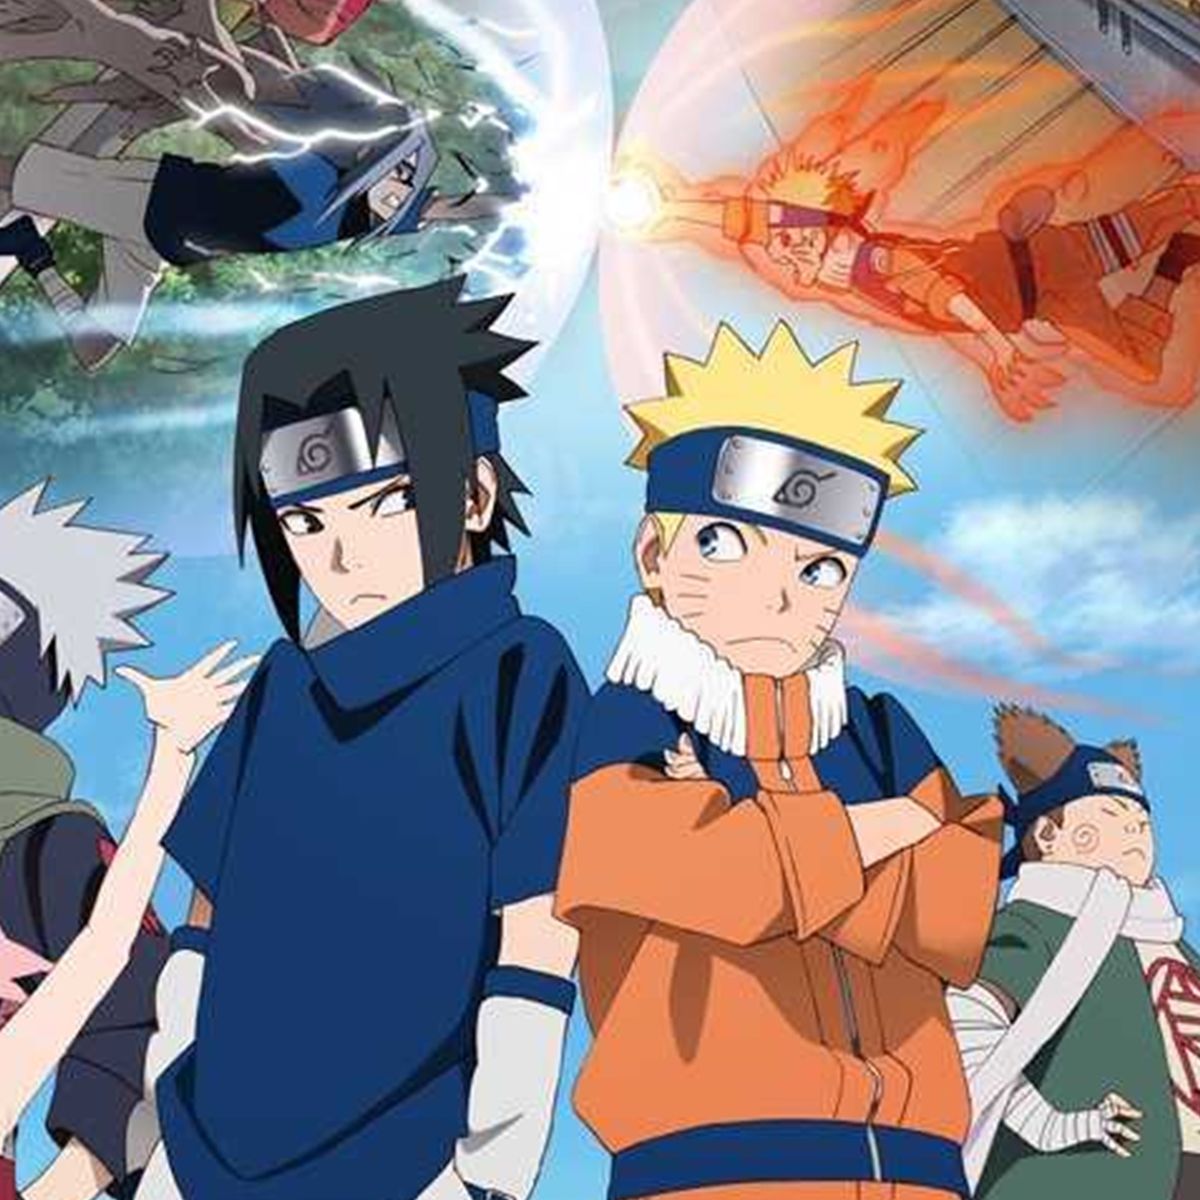 Naruto celebra su 20 aniversario con un remake de sus mejores momentos -  Vandal Random